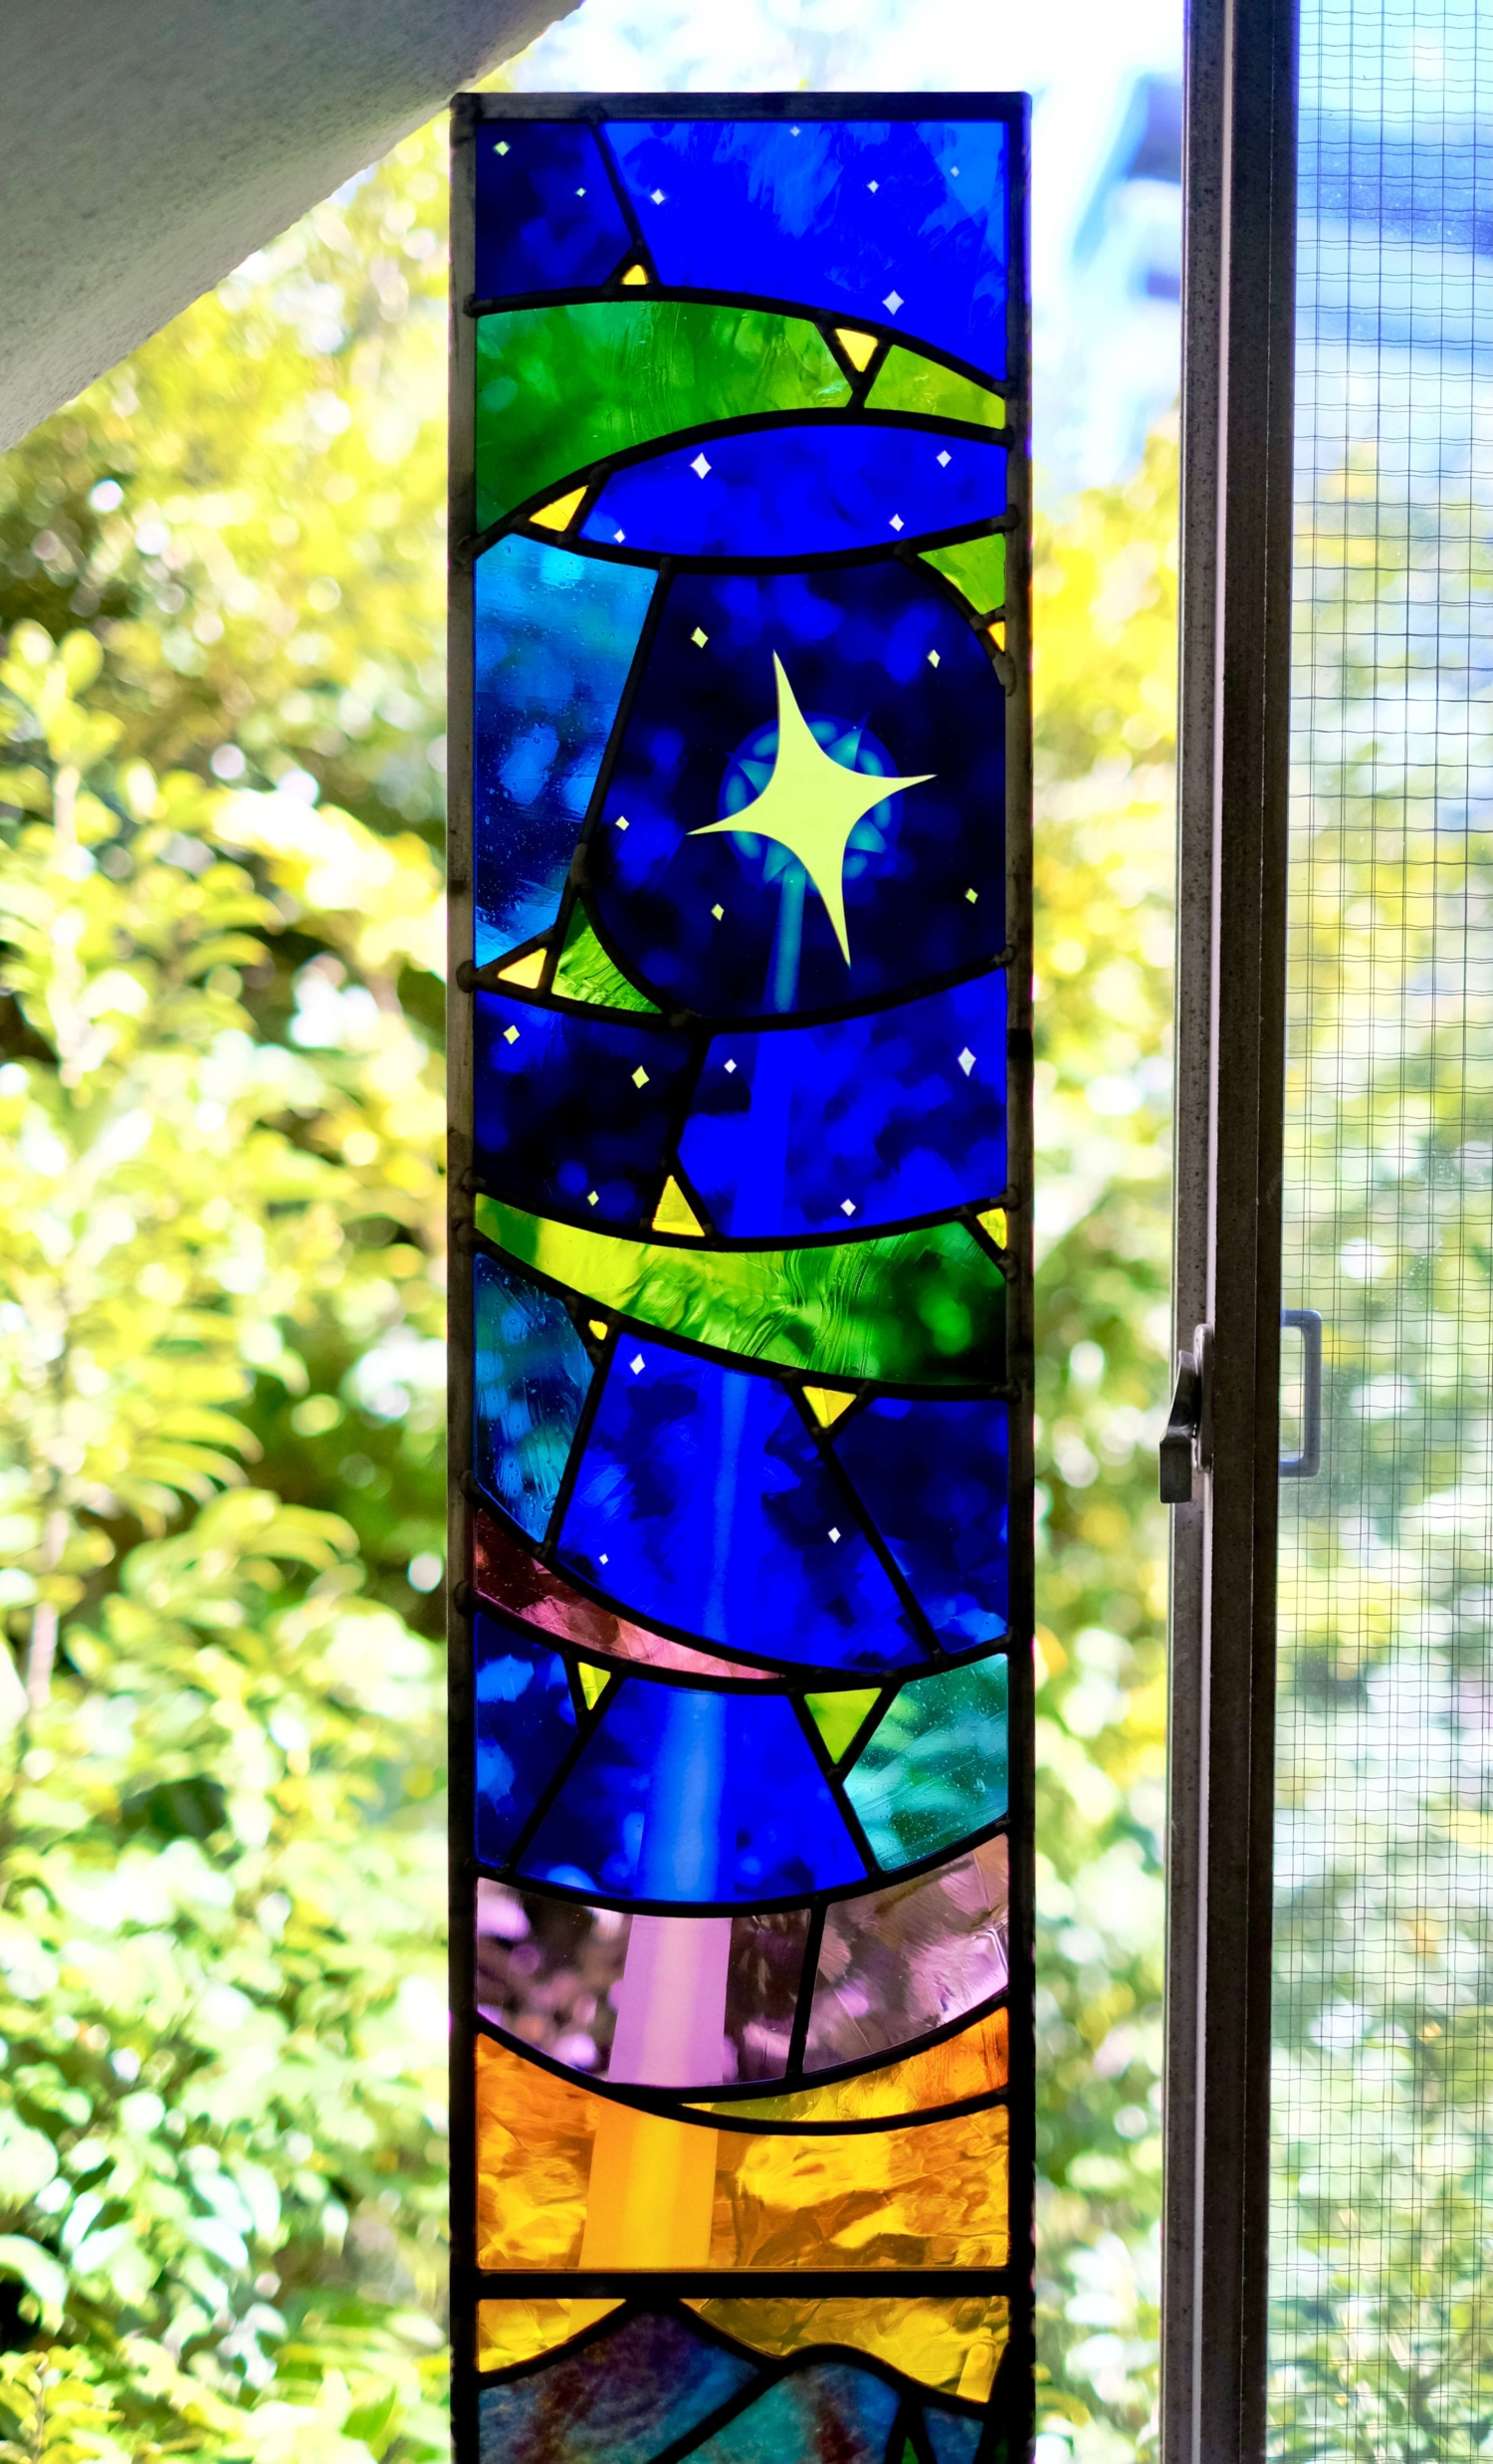 目黒星美学園小学校のステンドグラス。空の部分はサンドブラストして星からの光を表現しました。